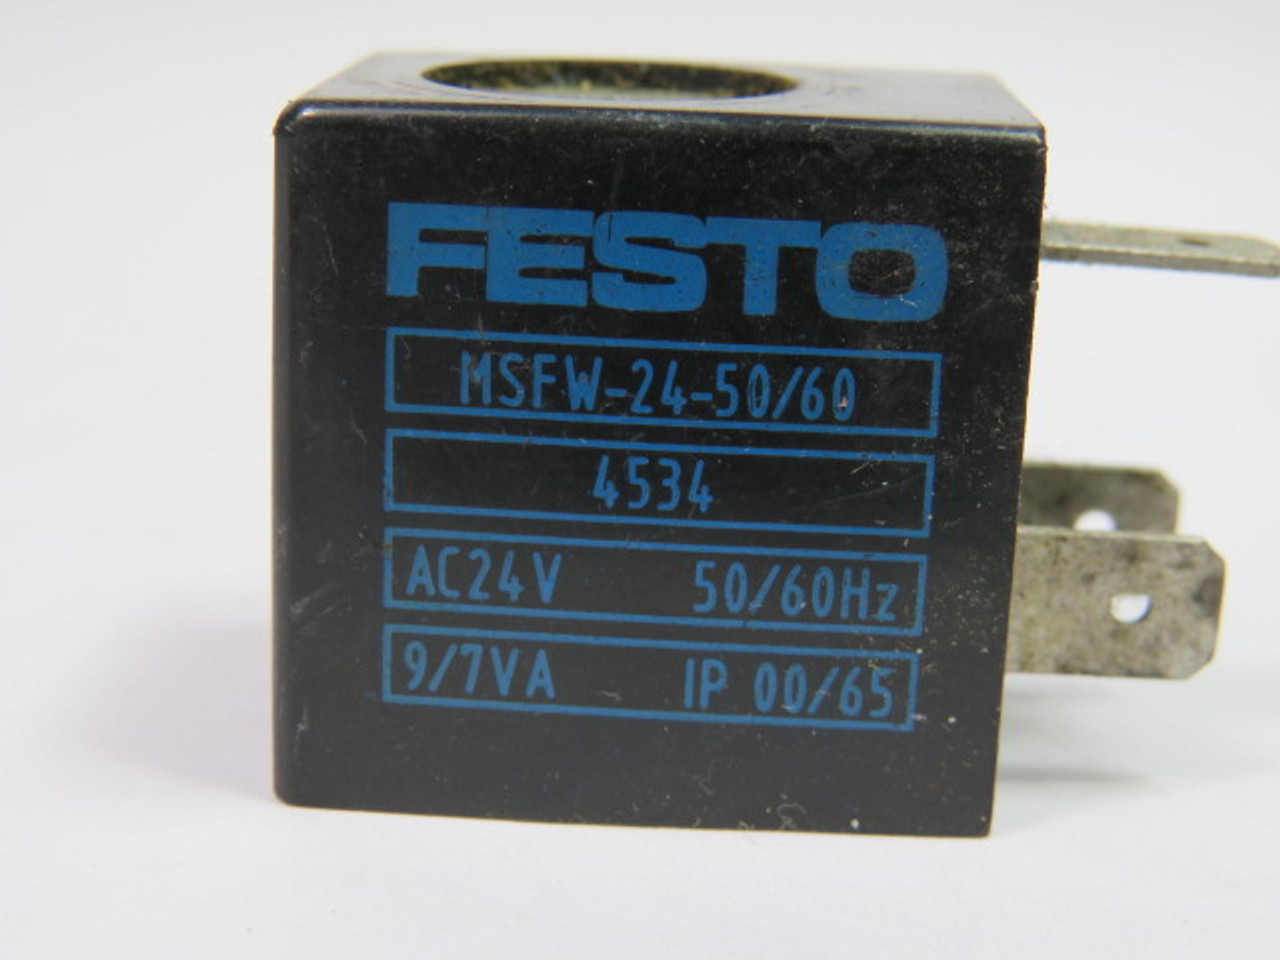 Festo MSFW-24-50/60 Solenoid Coil 24 Vac USED